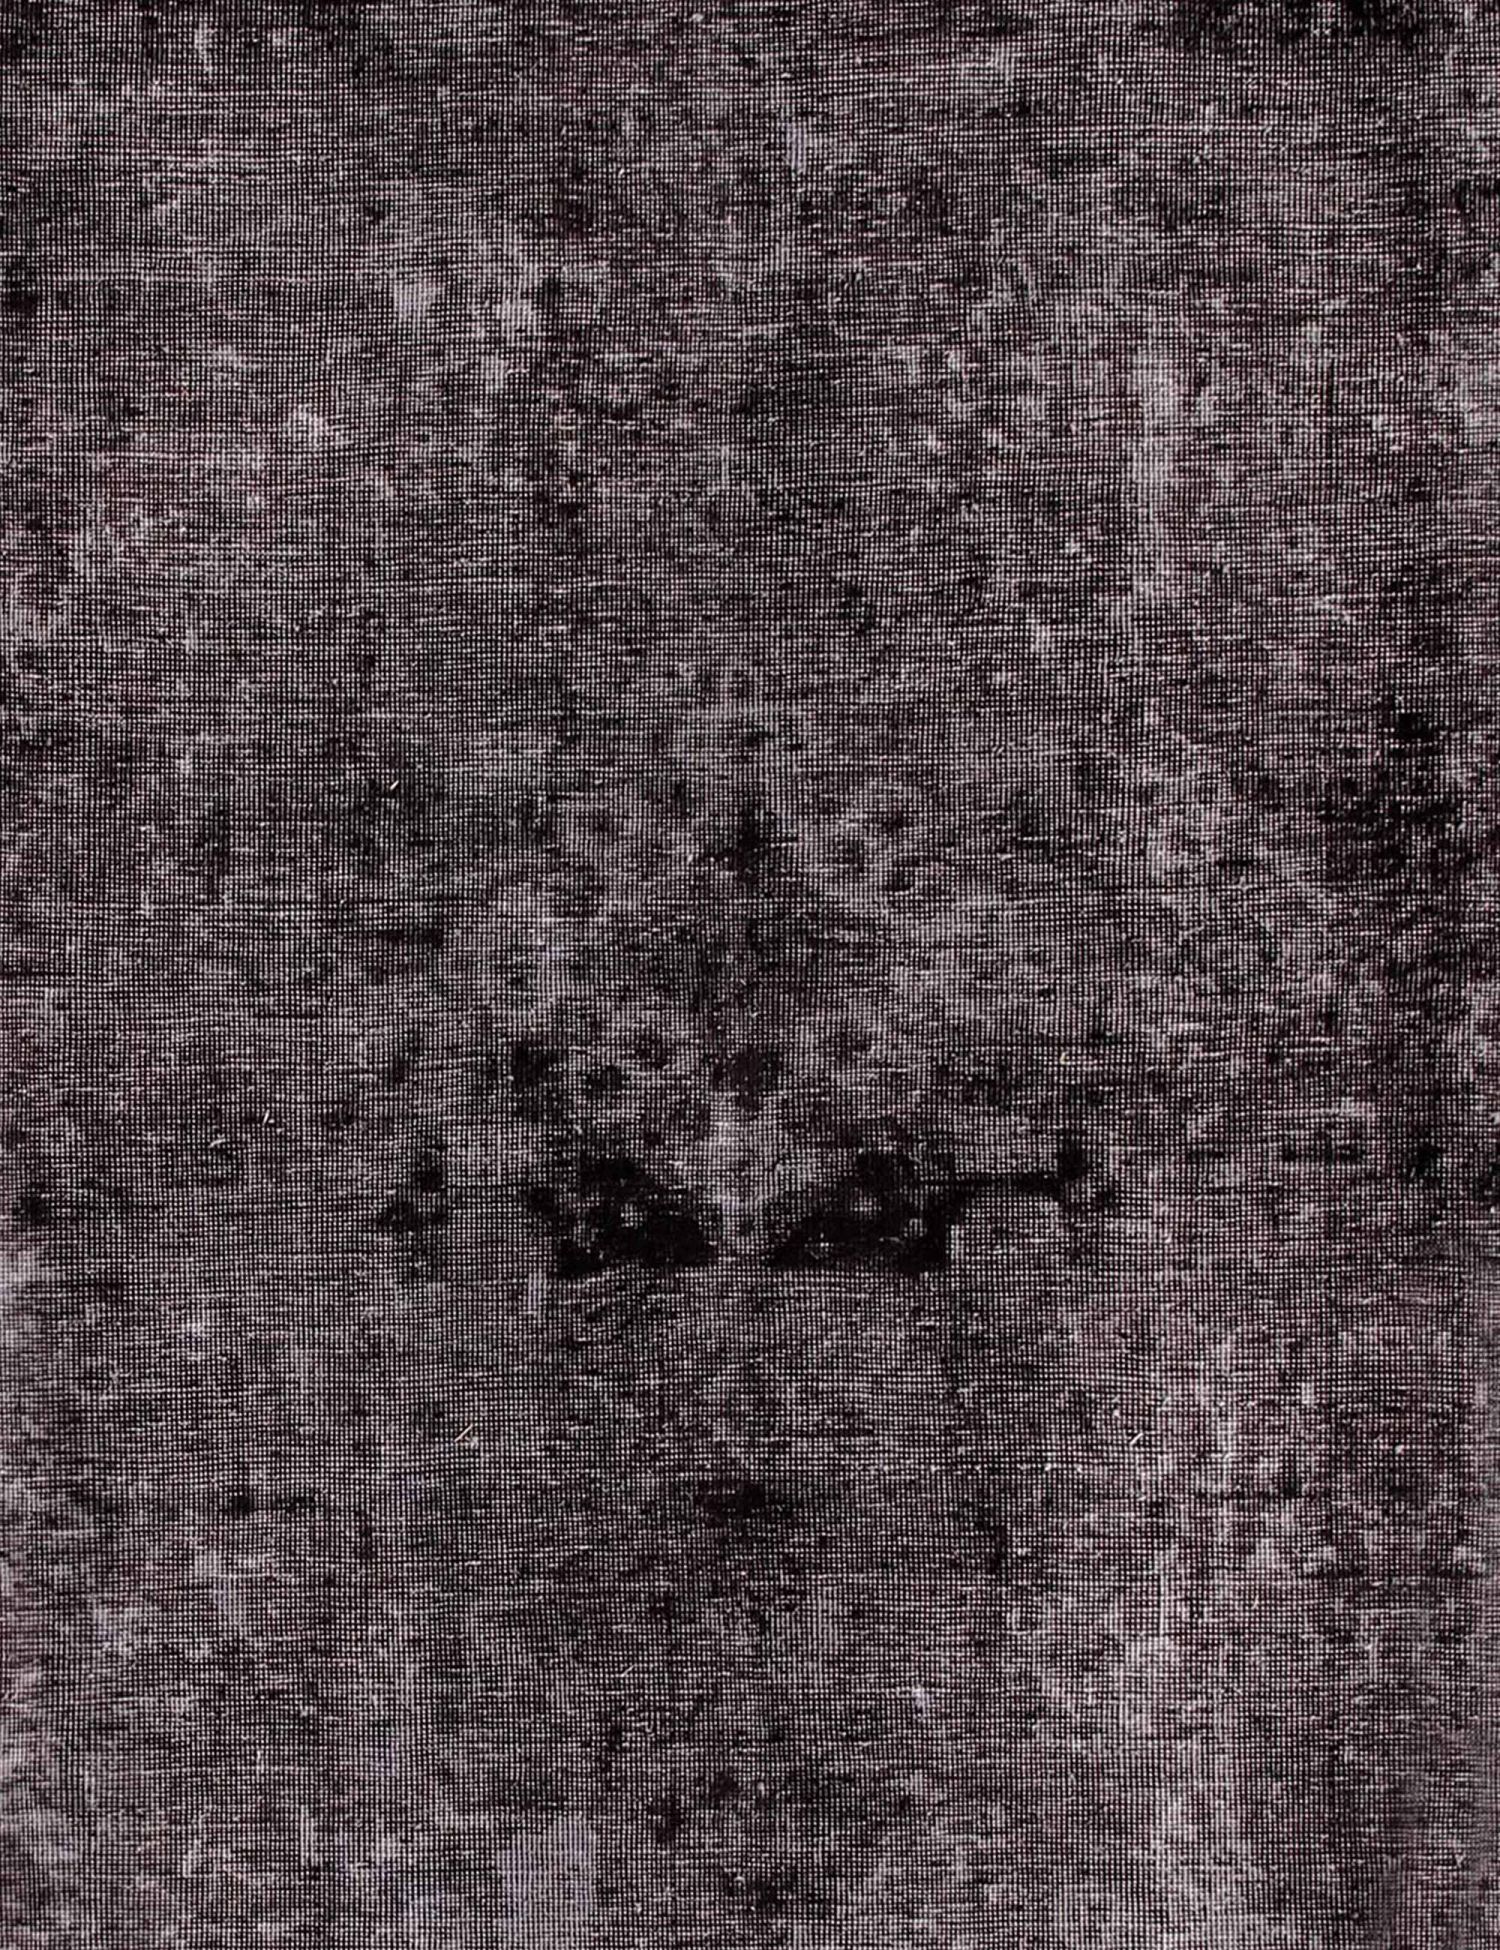 Persischer Vintage Teppich  schwarz <br/>222 x 222 cm